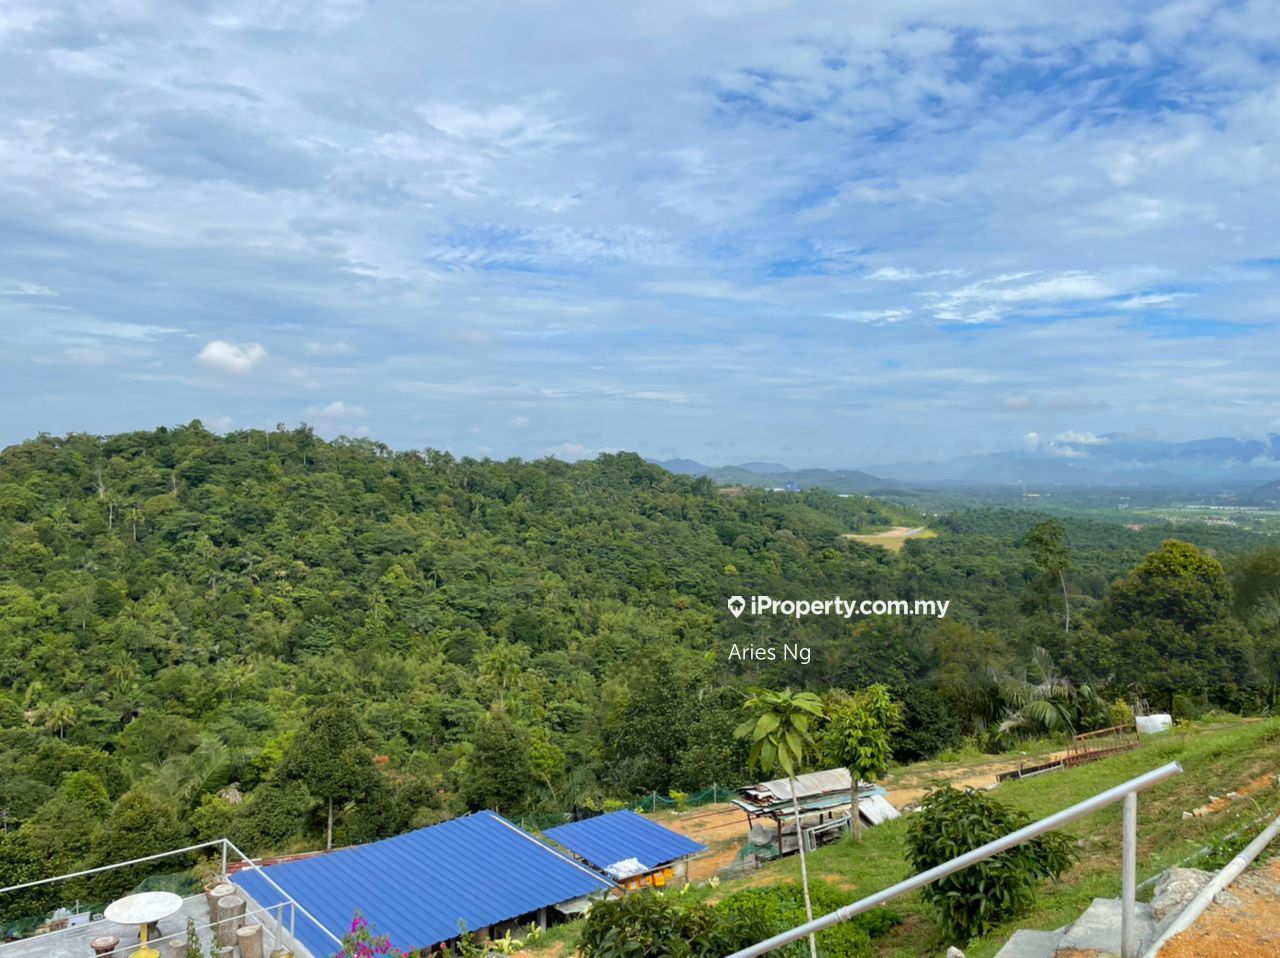 Lama ulu yam klinik desa Selangor kritikal